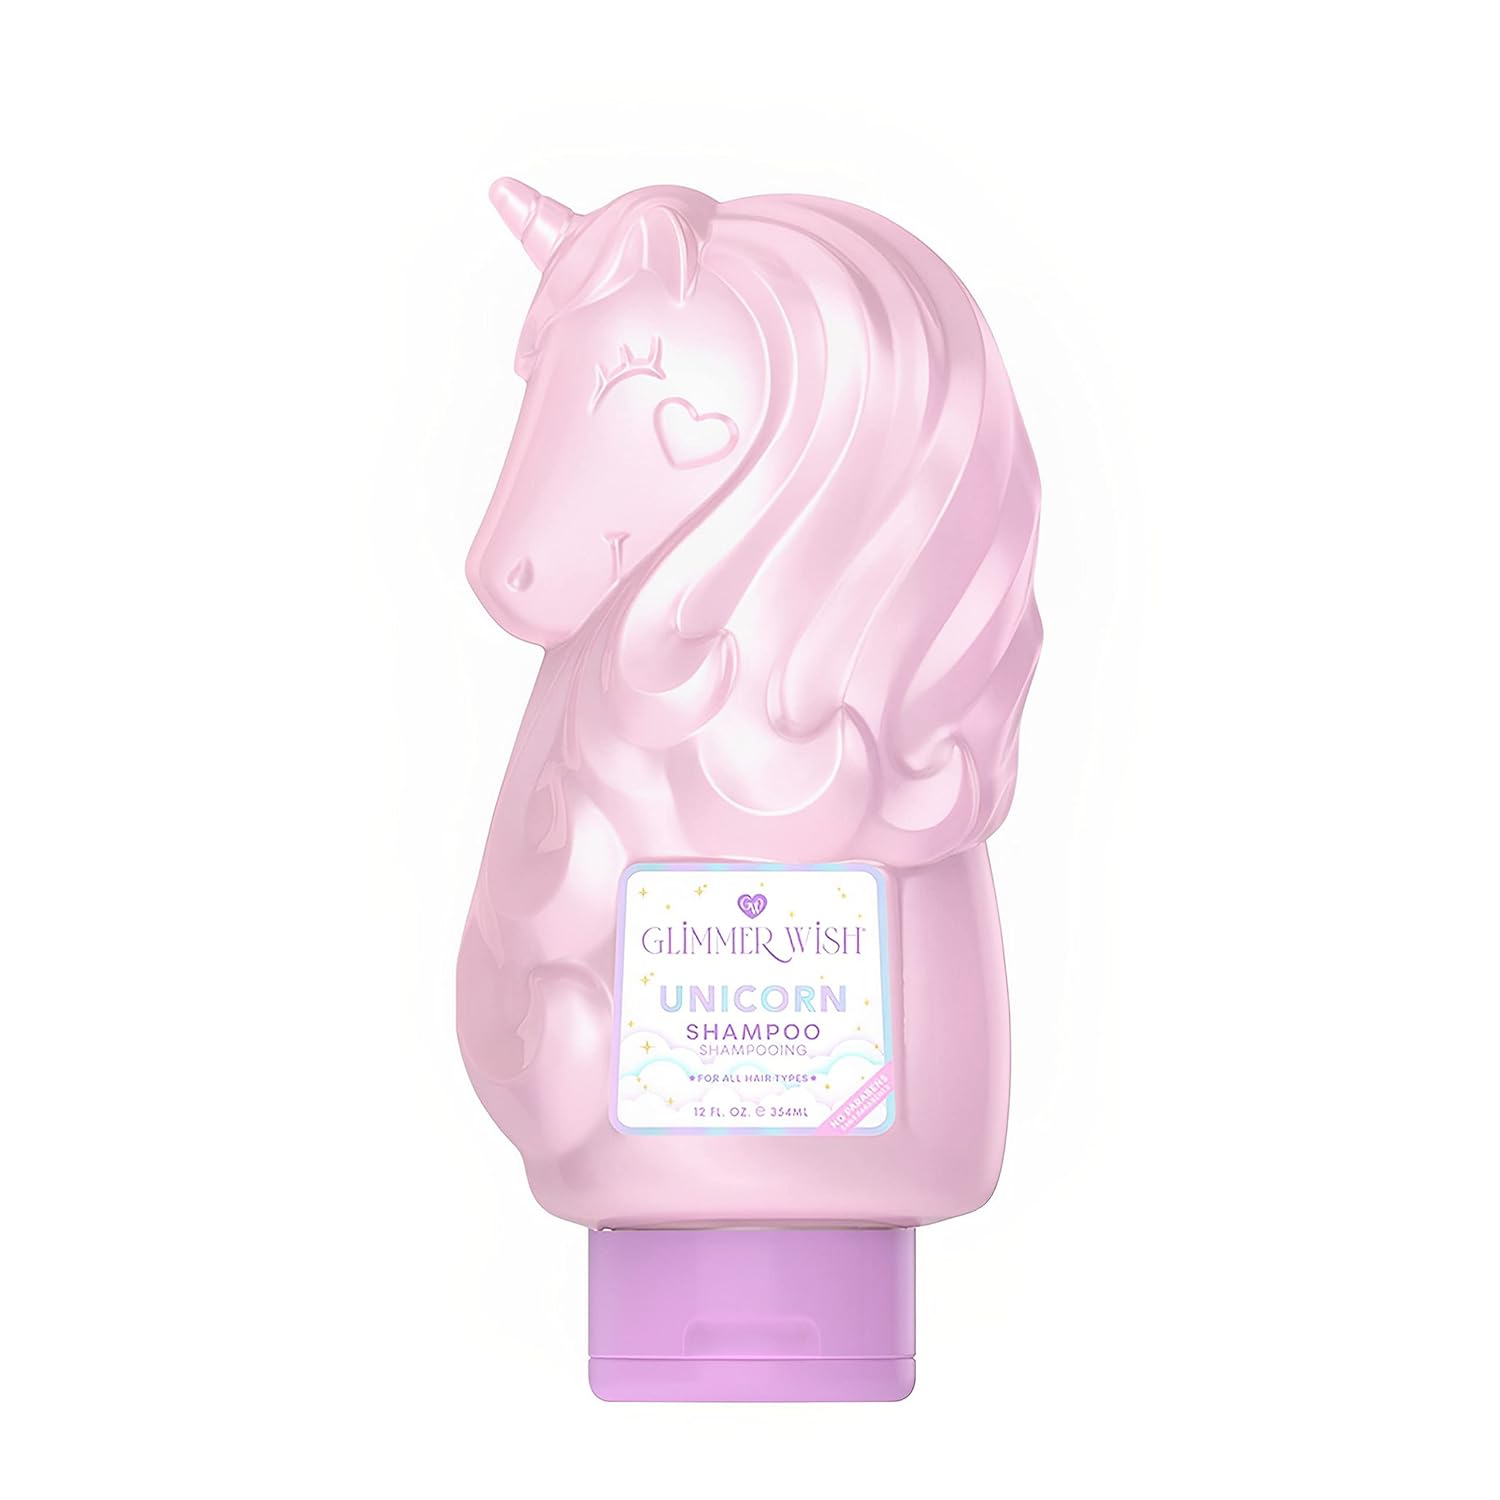 Generic Premium Unicorn Shampoo Glimmer Wish, Vanilla Cotton Candy Scent, Dermatologist Tested, Sulfate